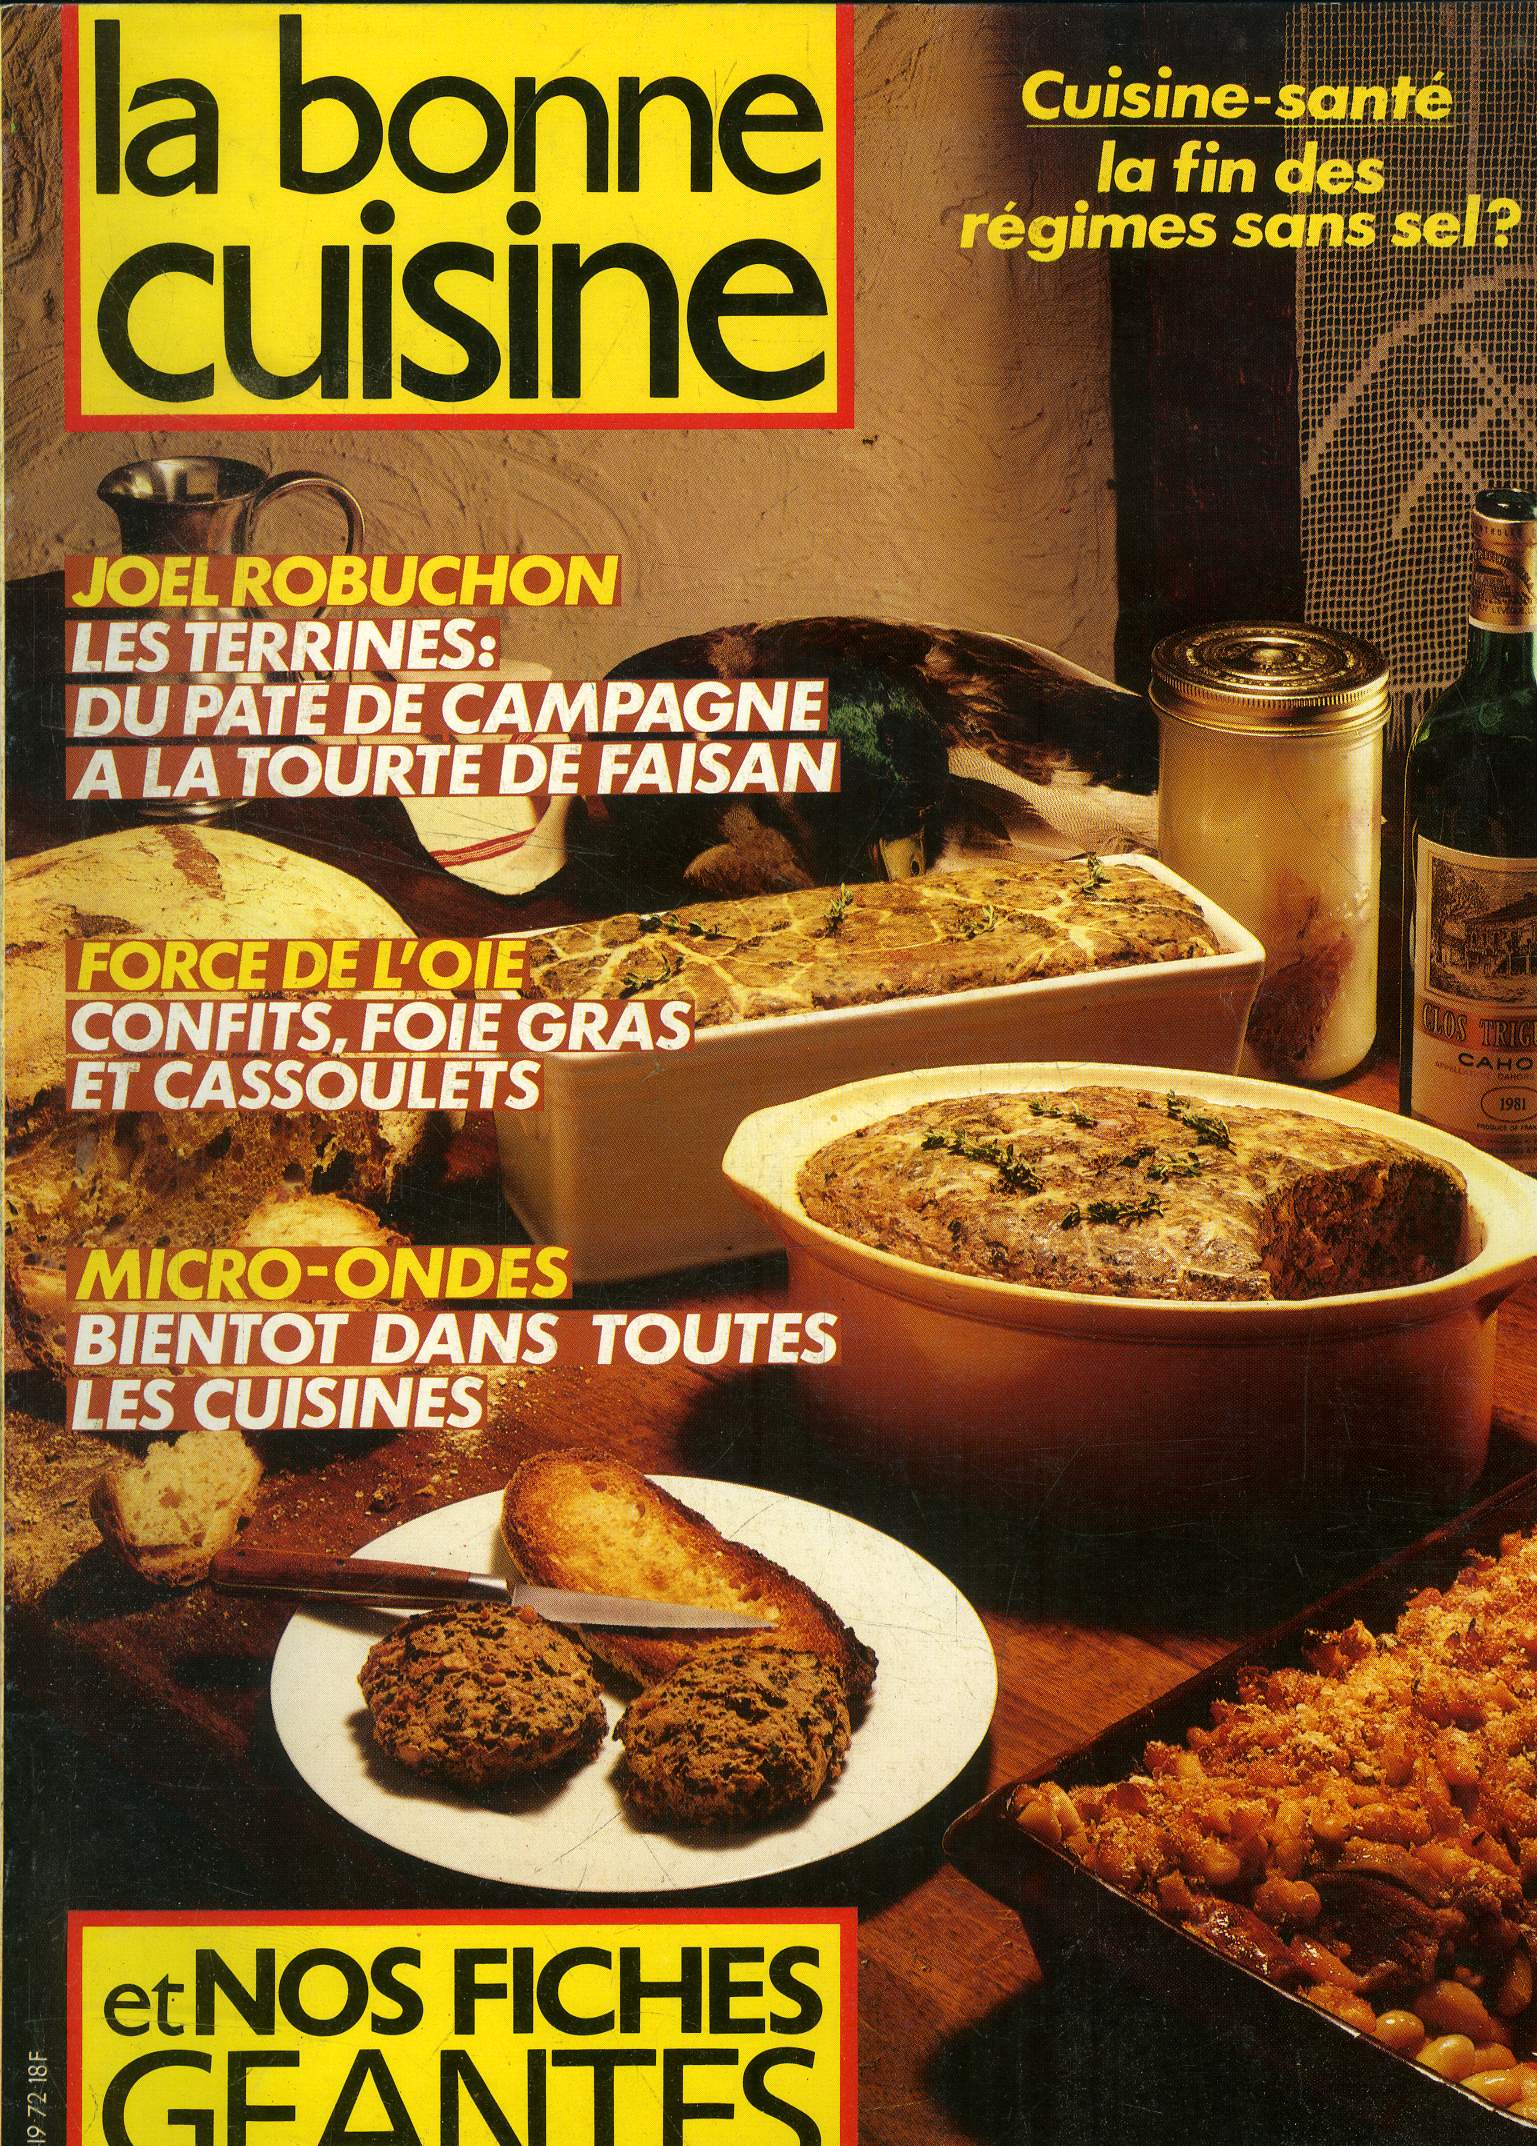 La Bonne cuisine n 72 - octobre - Novembre 1986 : Jos Lampreia : Cuisine colore pour Maison Blanche - Terrineset pts jamais dmods - Ca ne manque pas de sel (cuisine sant) - le maxi-choix des micro-ondes -